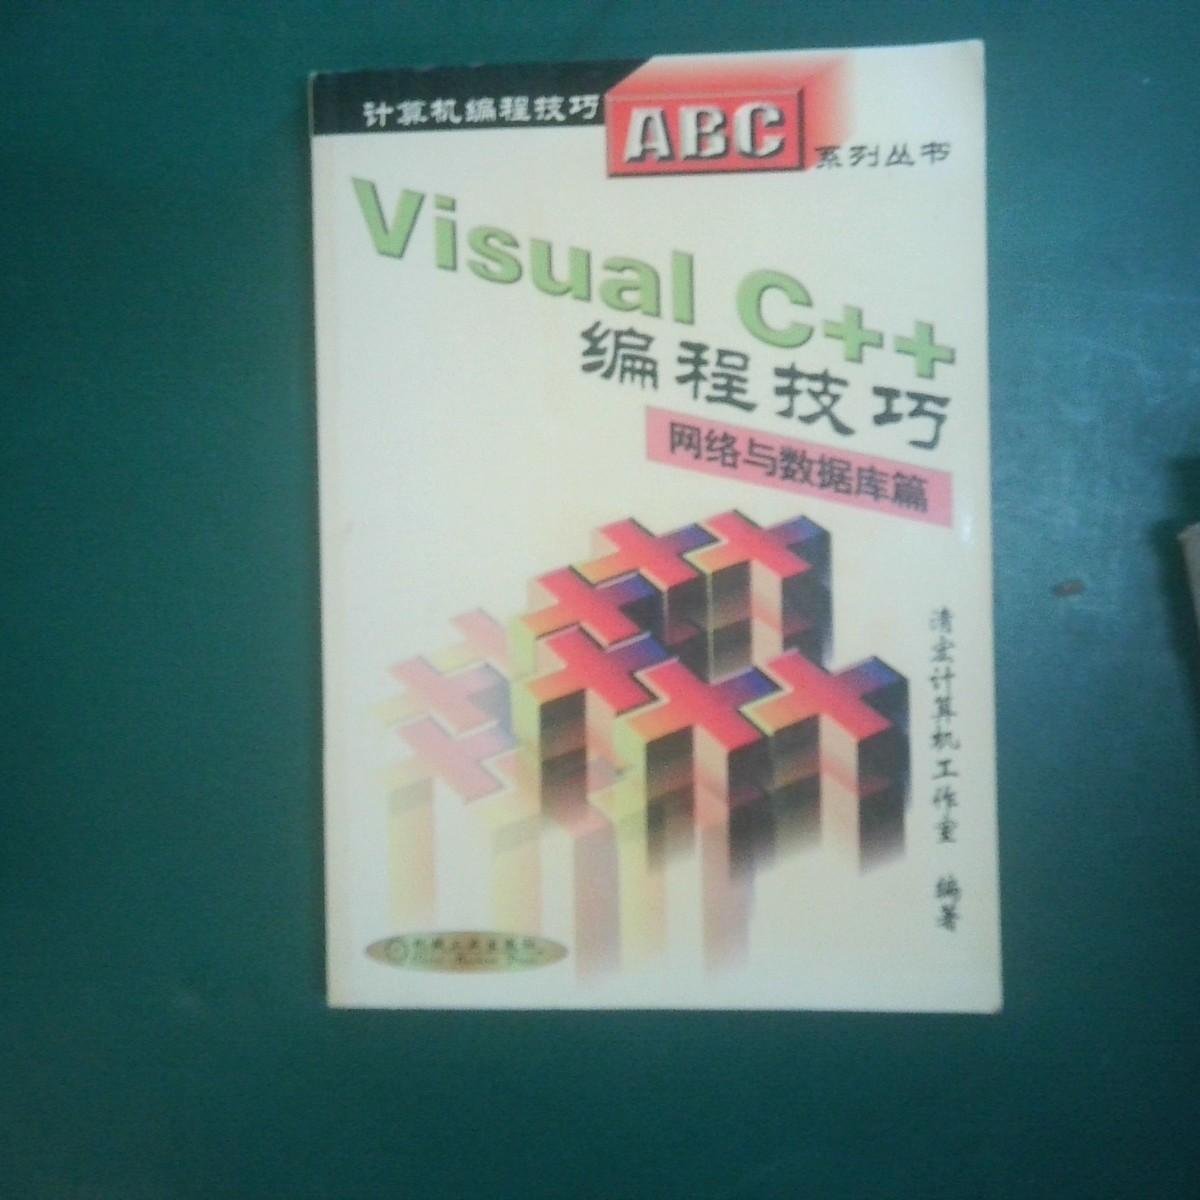 Visual C++编程技巧.网络与数据库篇